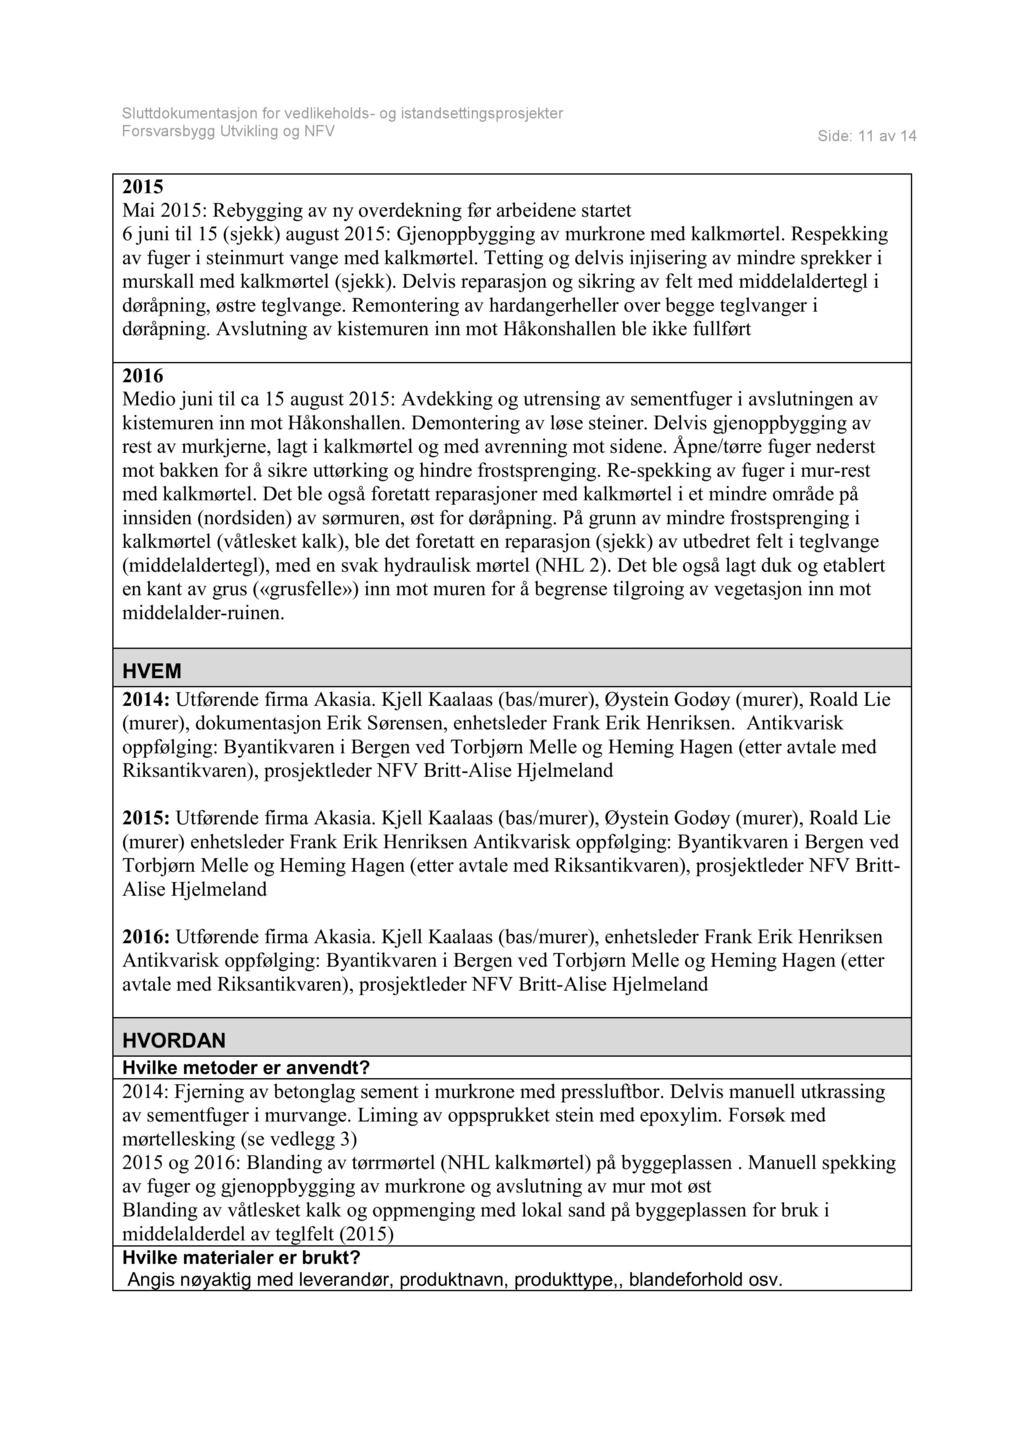 Side: 11 av 14 2015 Mai 2015:Rebyggingav ny overdekningfør arbeidenestartet 6 juni til 15 (sjekk) august2015: Gjenoppbyggingav murkronemed kalkmørtel.respekking av fuger i steinmurtvangemedkalkmørtel.